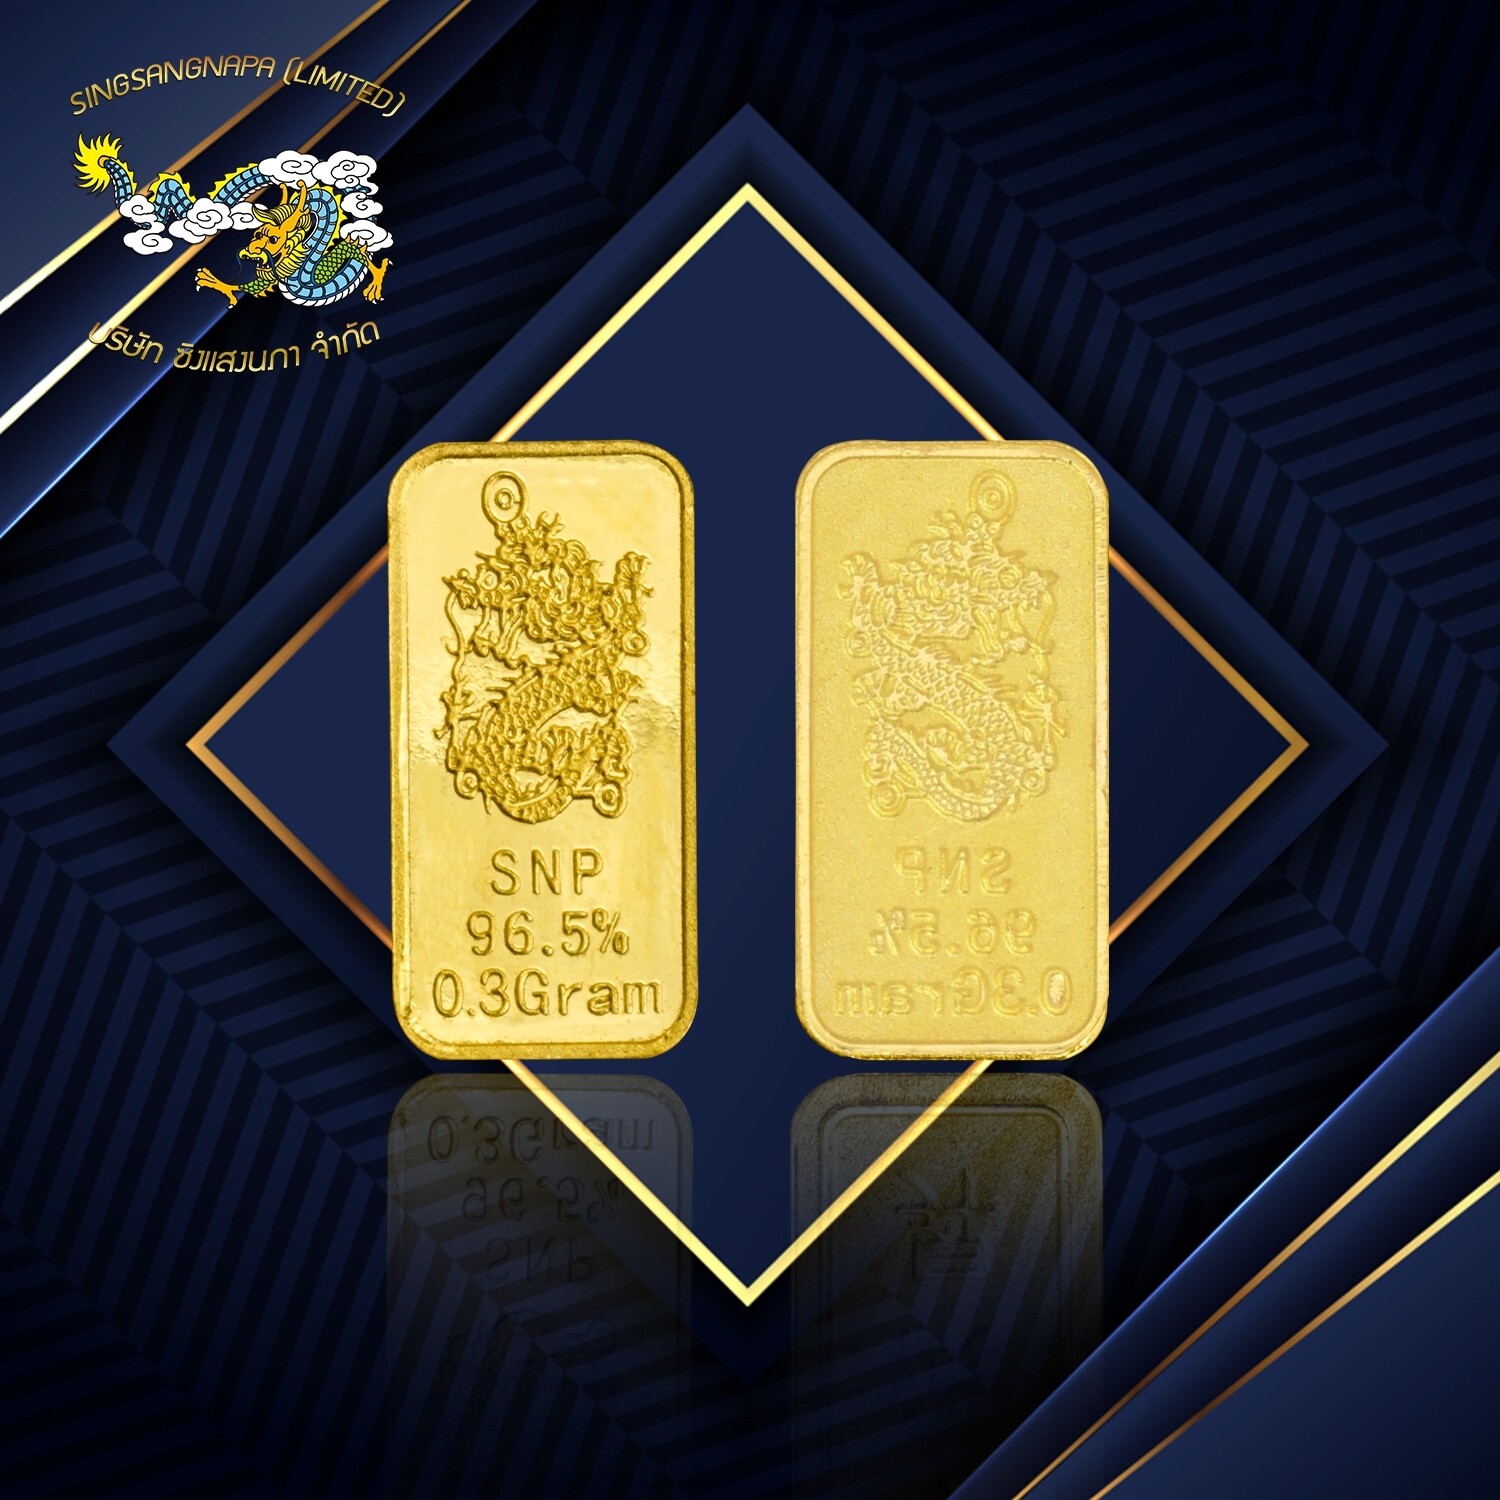 SSNP GOLD 7 ทองคำแท่งแท้ 96.5% น้ำหนัก 0.3 กรัม สินค้าพร้อมใบรับประกัน